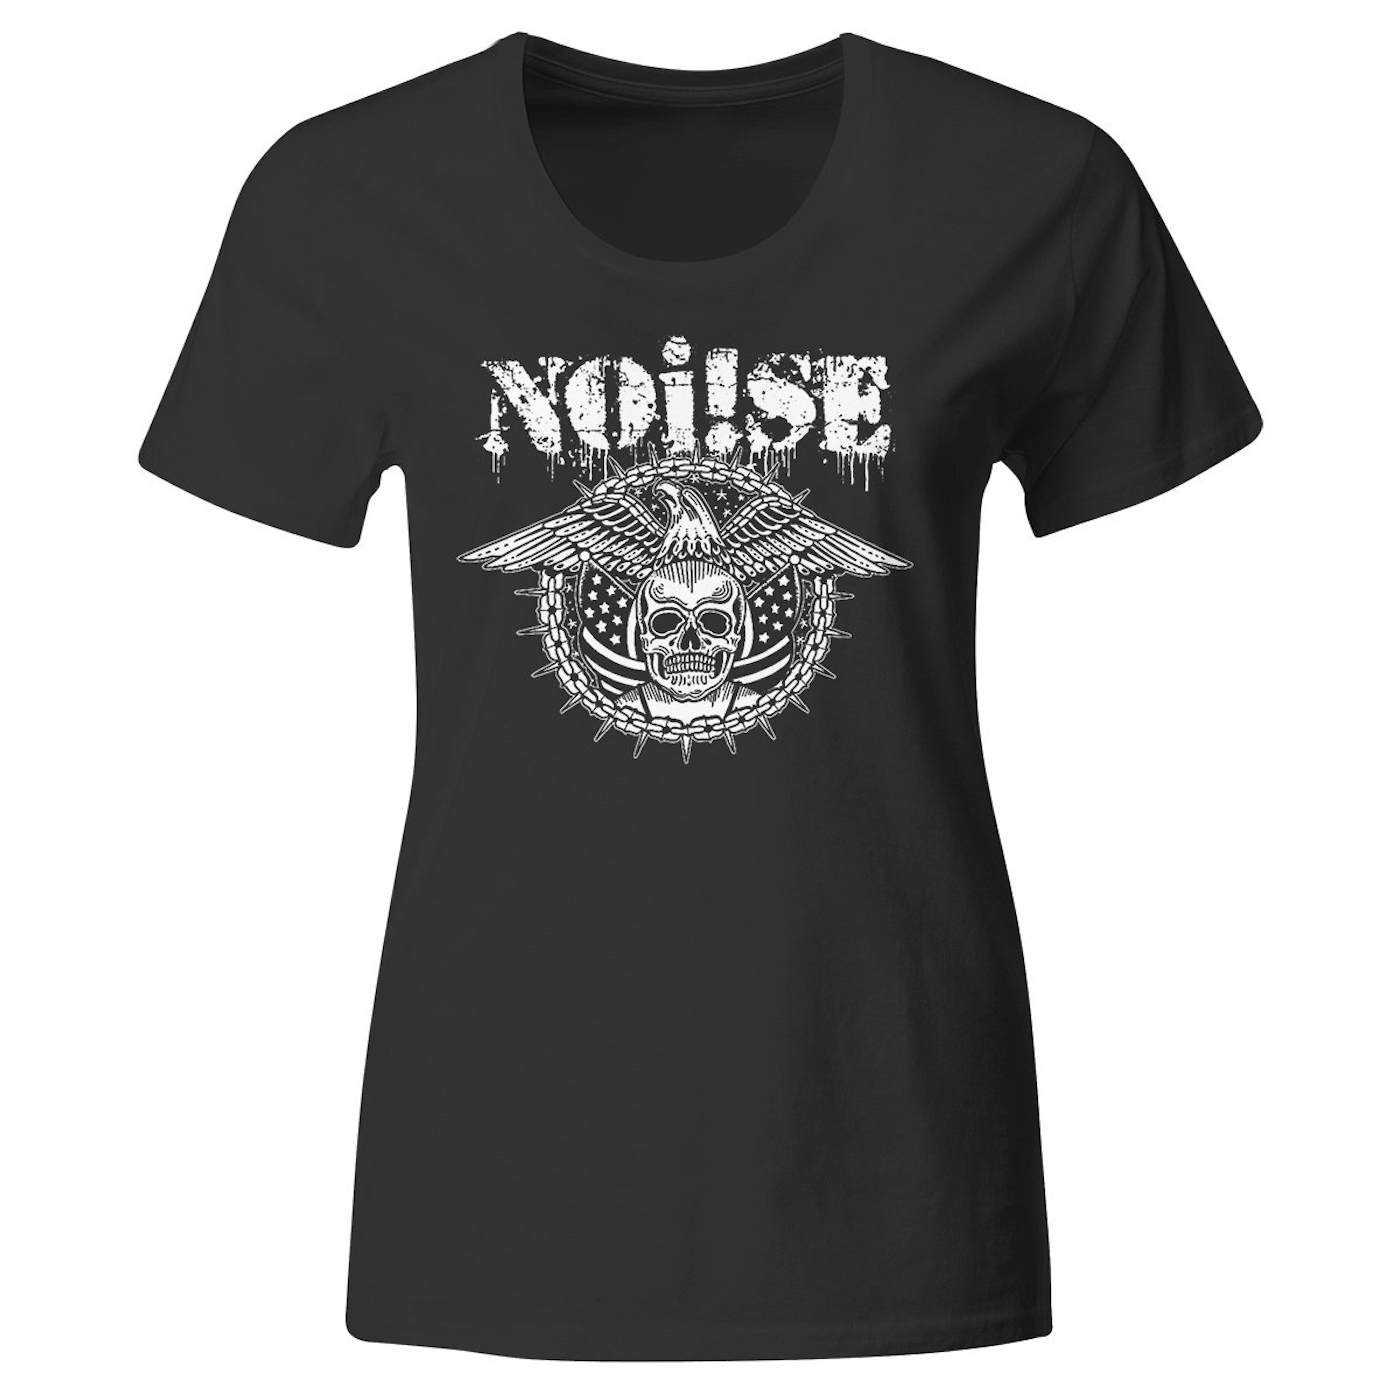 NOi!SE - Skull Eagle Logo - Black - T-Shirt - Fitted